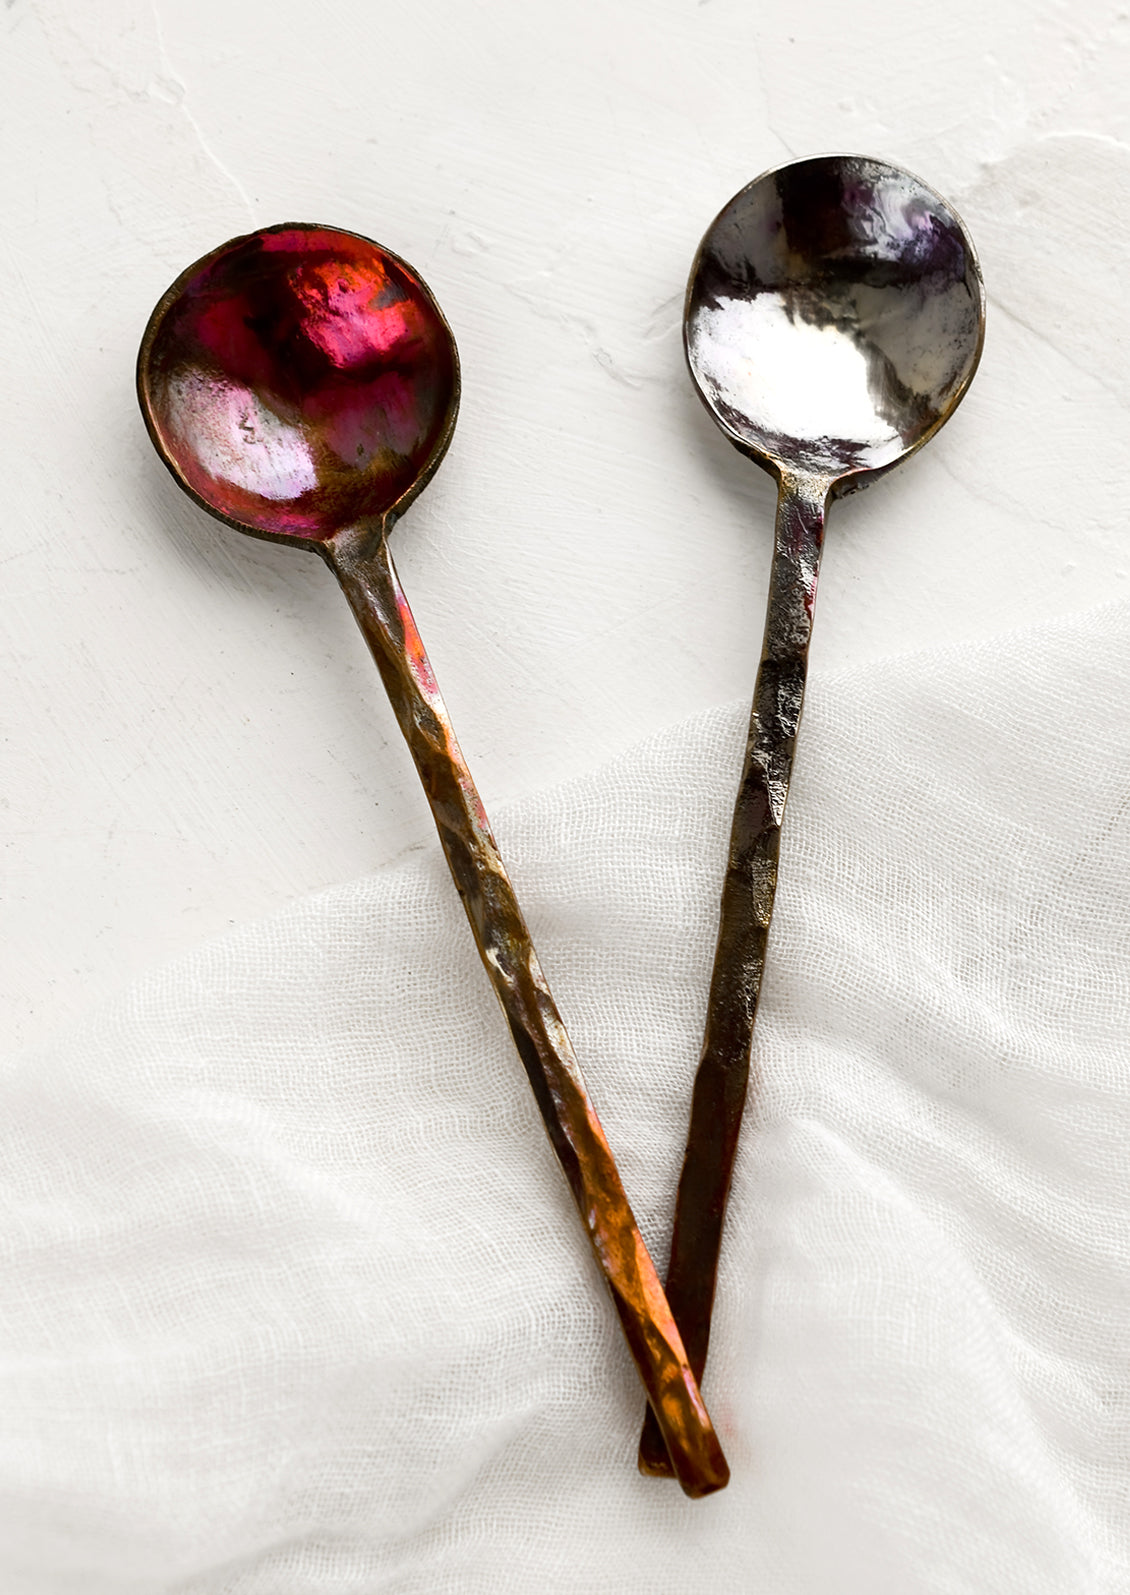 Oxidized Metal Spoon - Classic